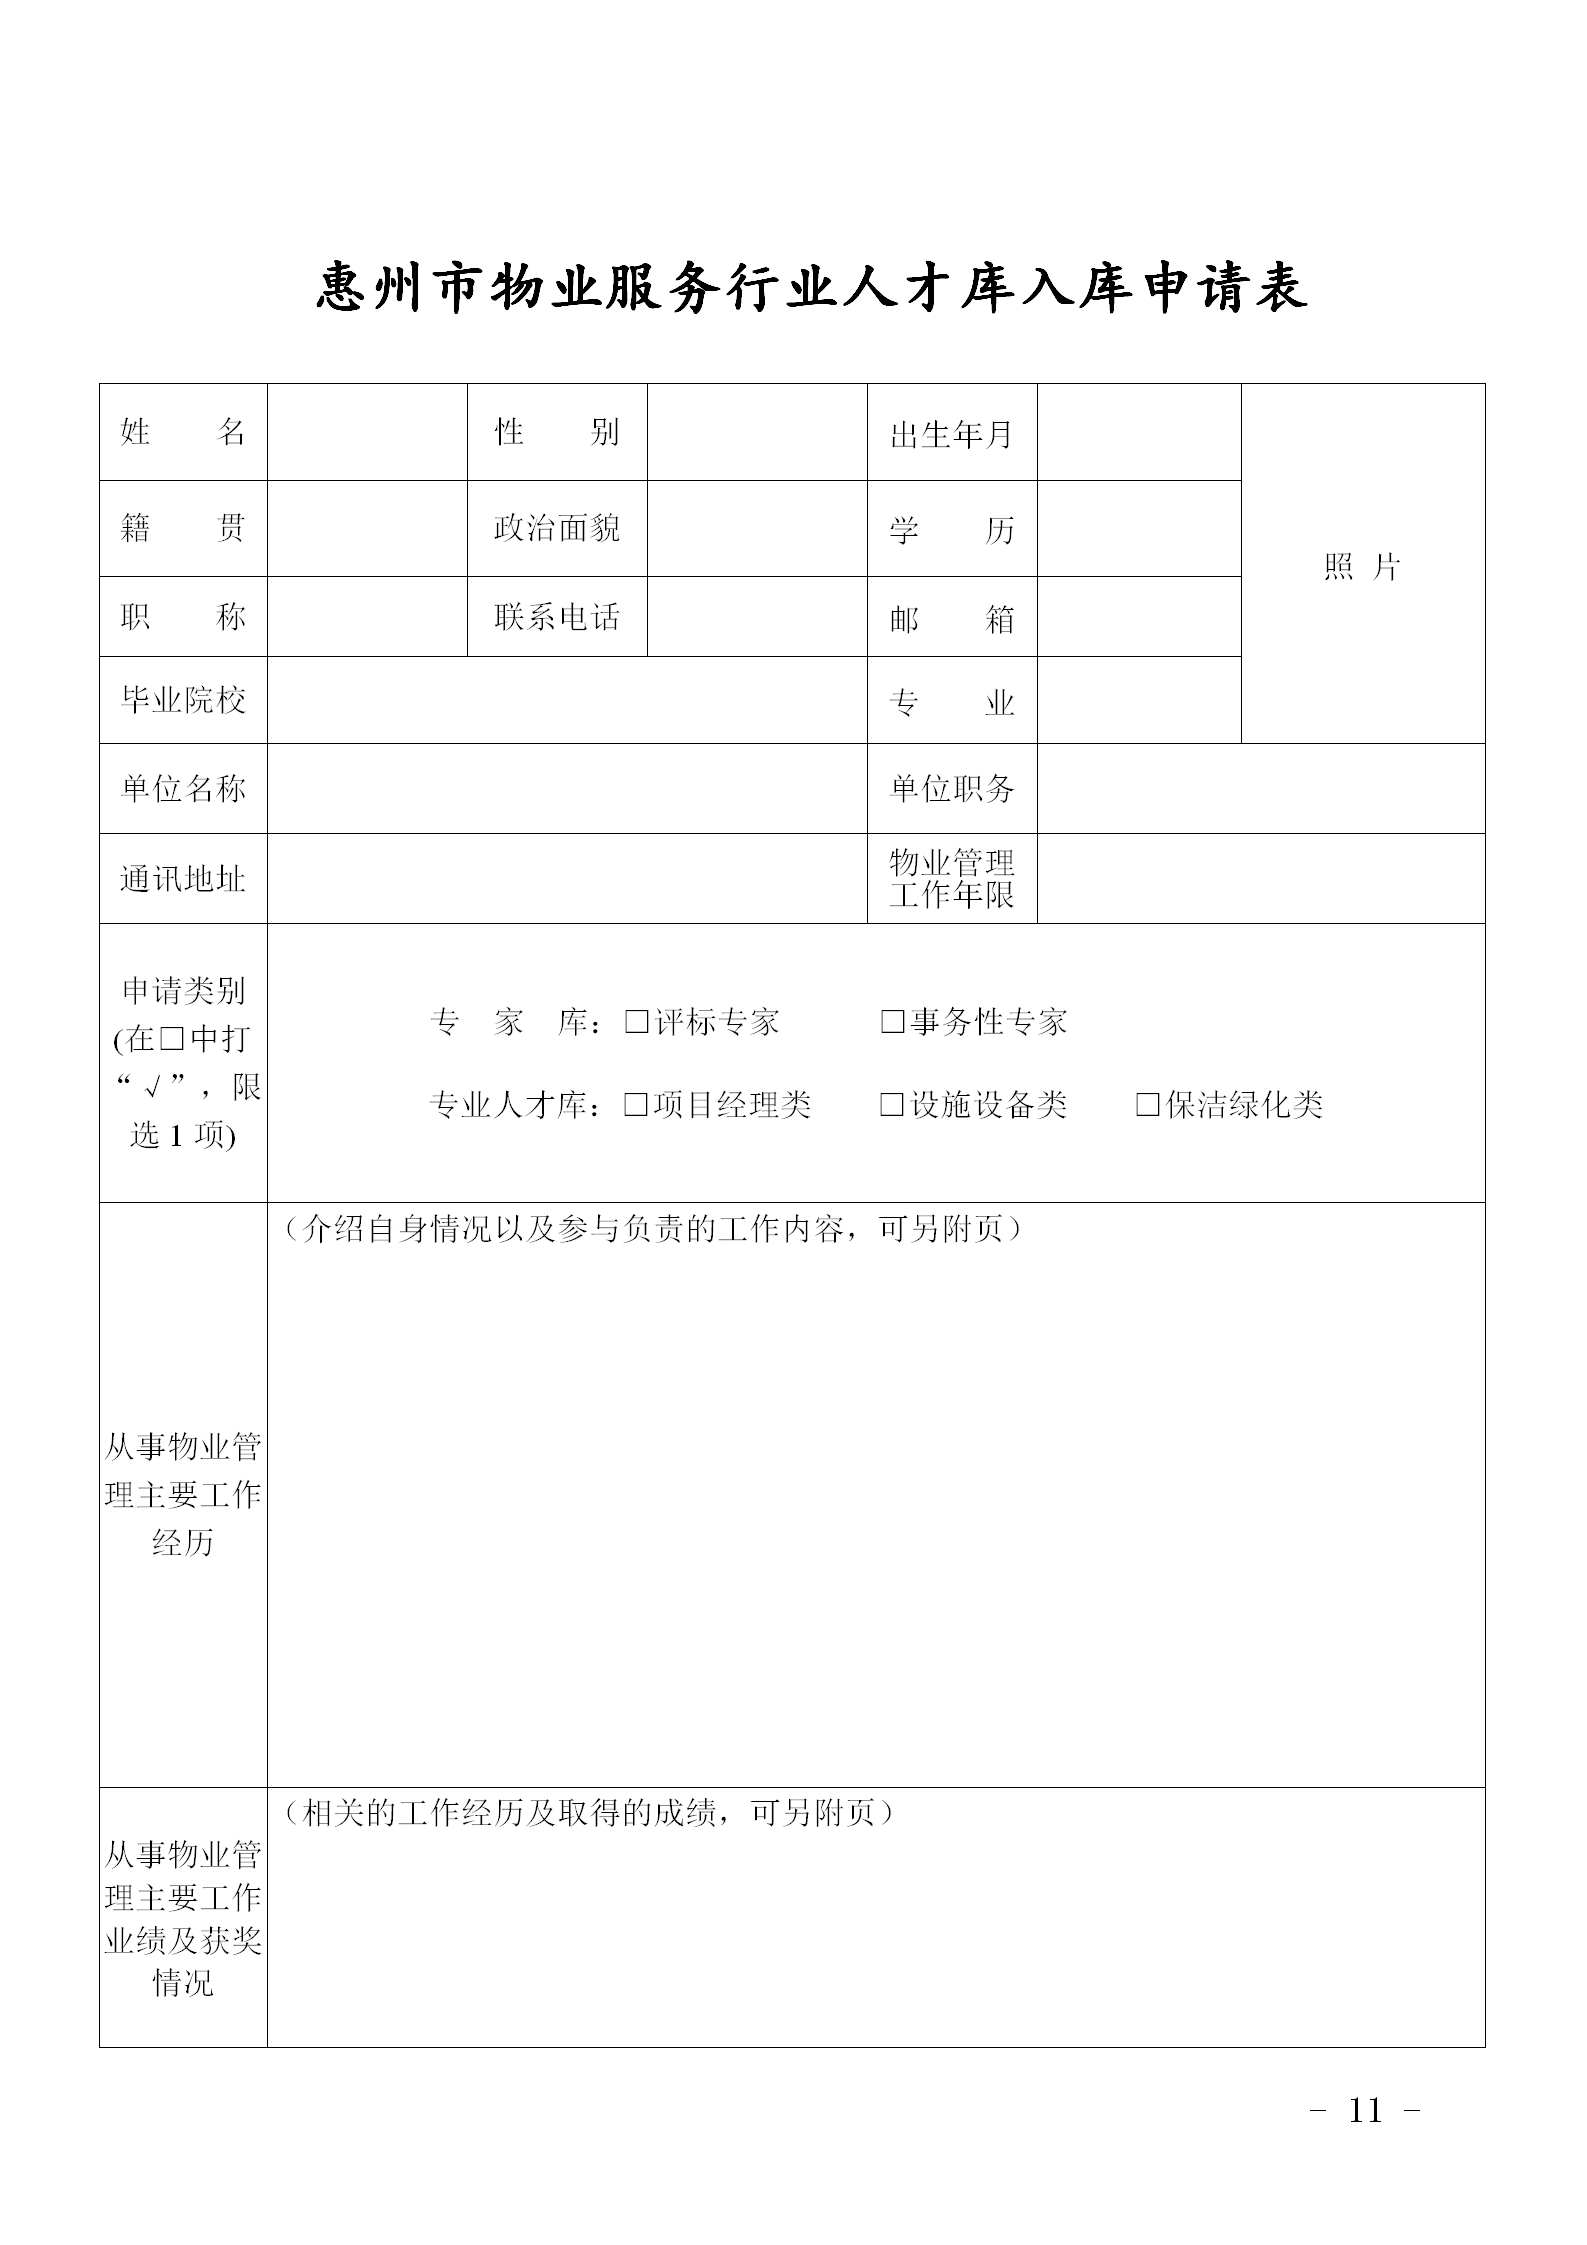 关于公开选聘惠州市物业服务行业专业人才的通知0109_11.png